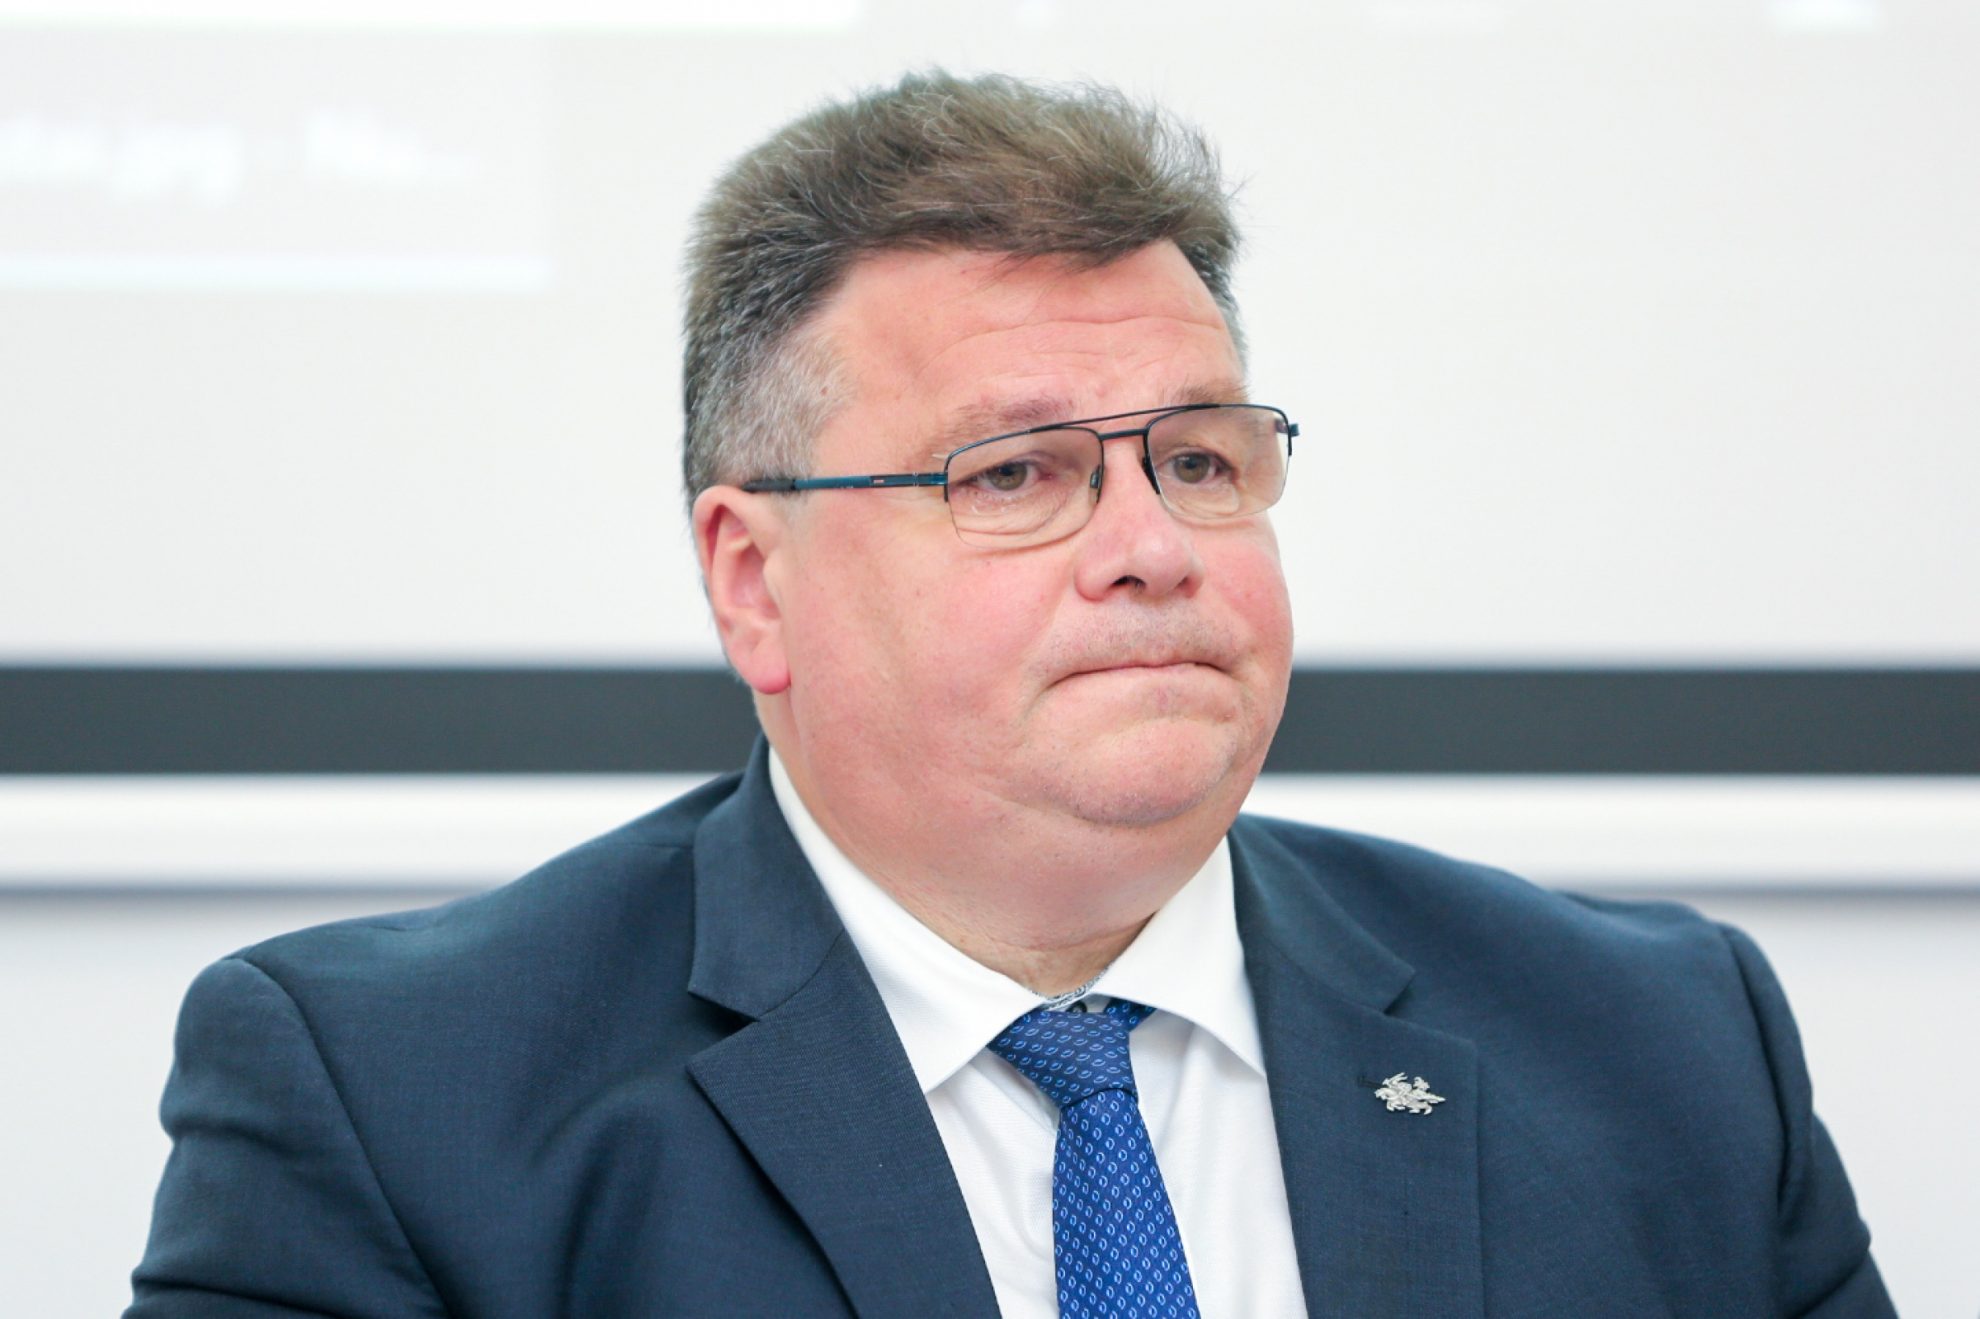 Užsienio reikalų ministras Linas Linkevičius pareiškė pirmadienį pasitrauksiantis iš partijos